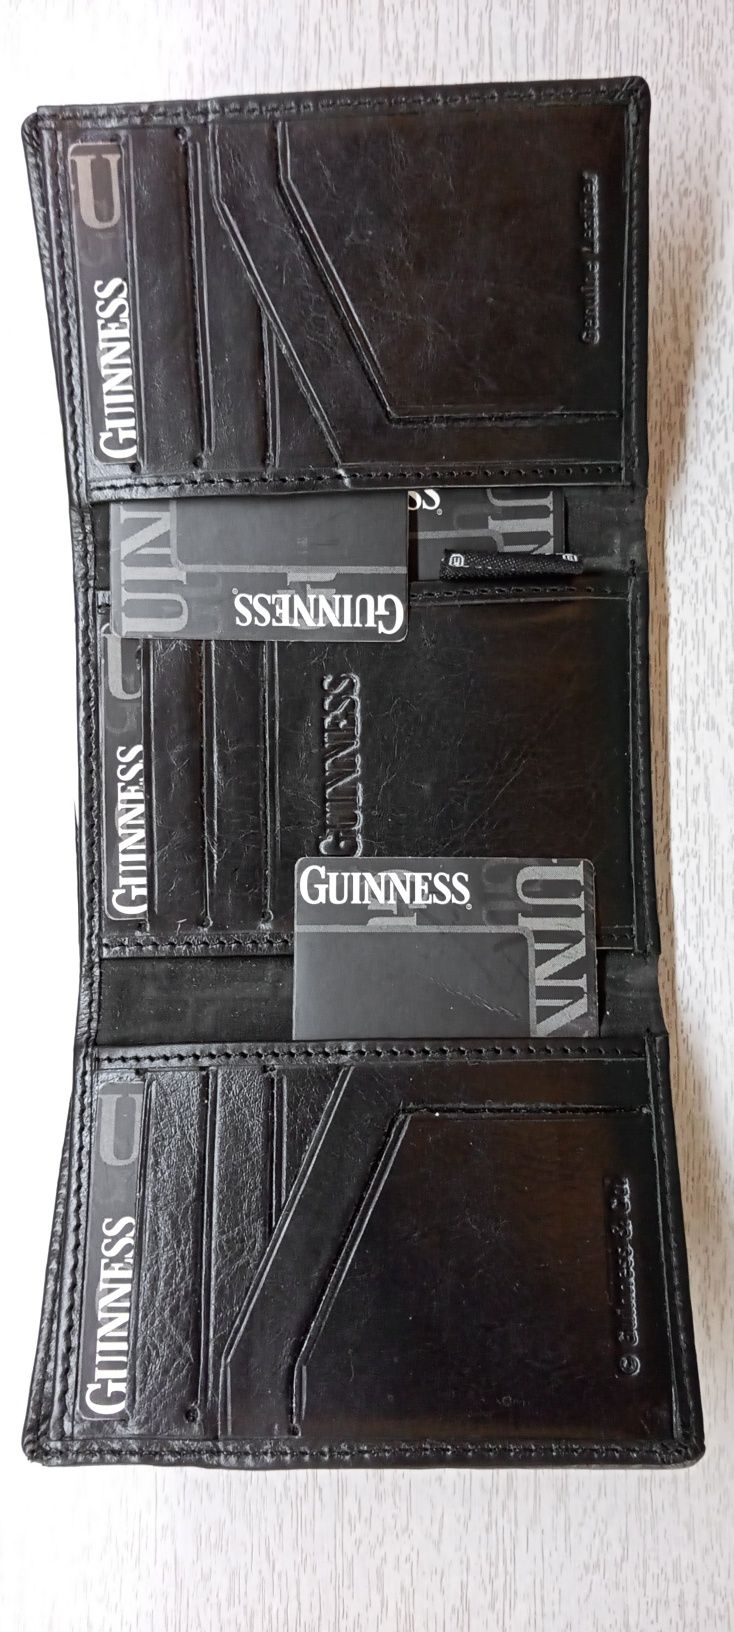 Portfel męski czarny skórzany firmy Guinness